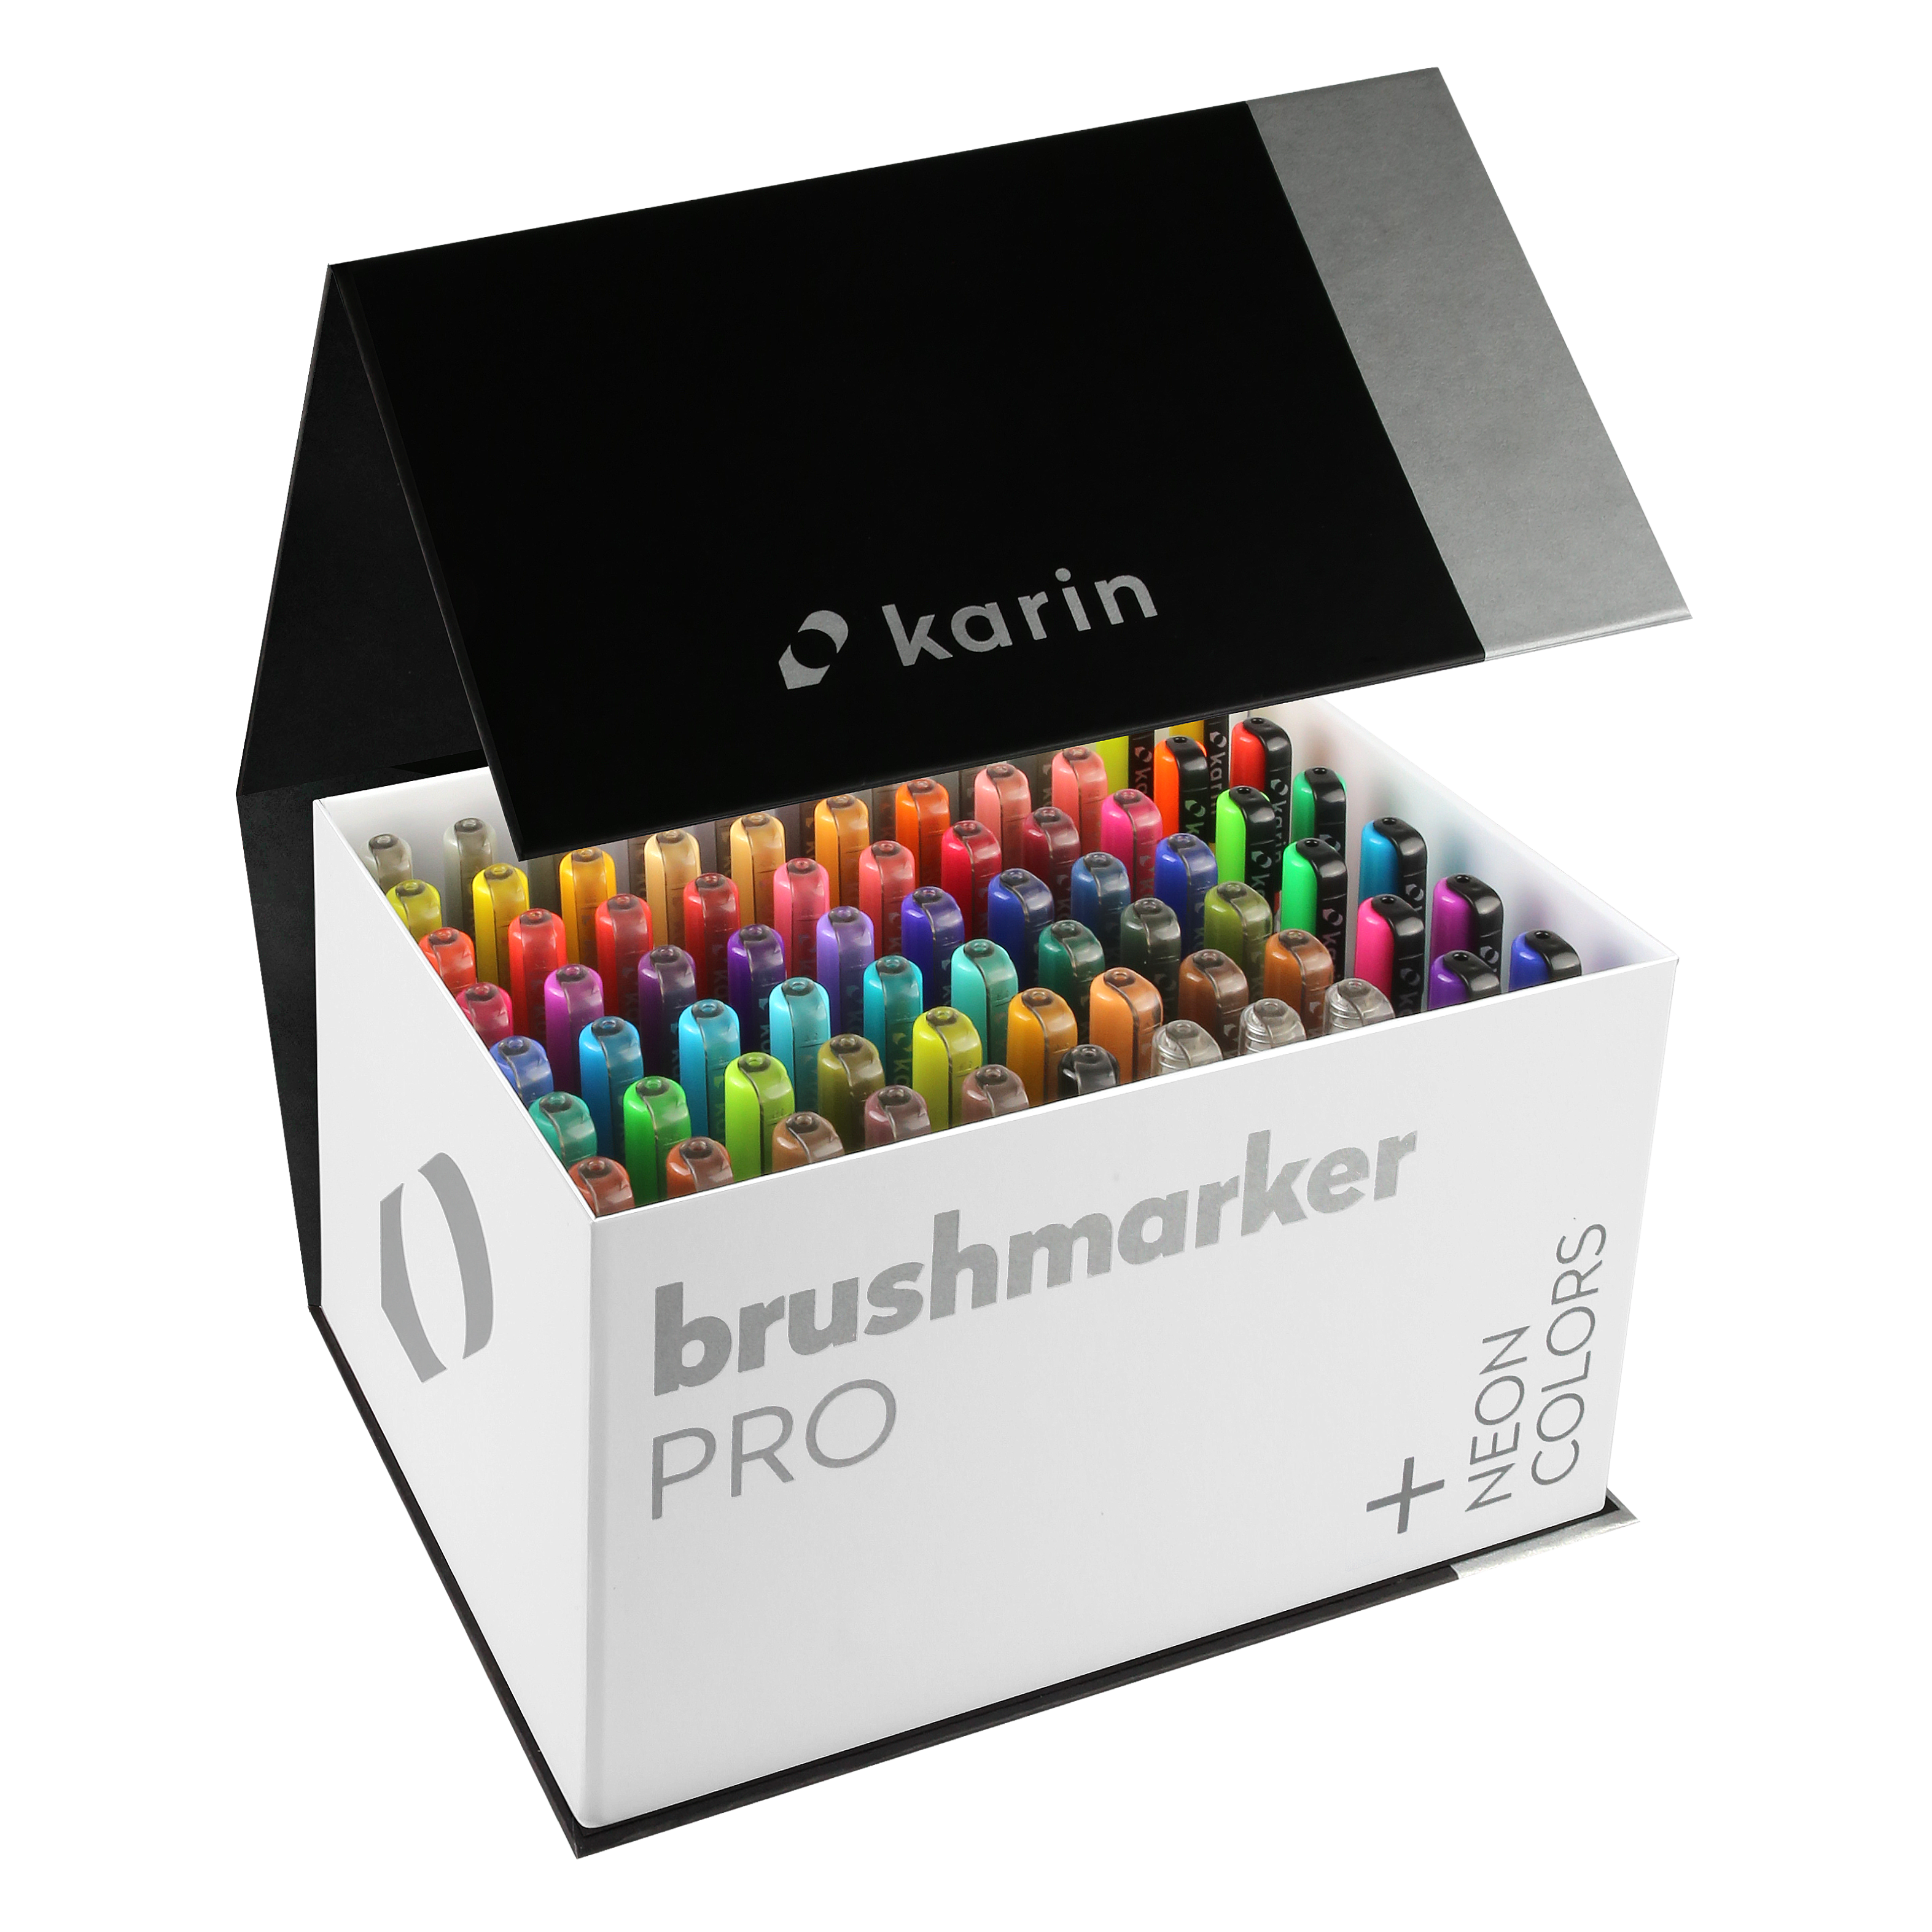 BrushmarkerPRO MegaBox PLUS - 72 colours + 3 blenders set - Paper Kooka